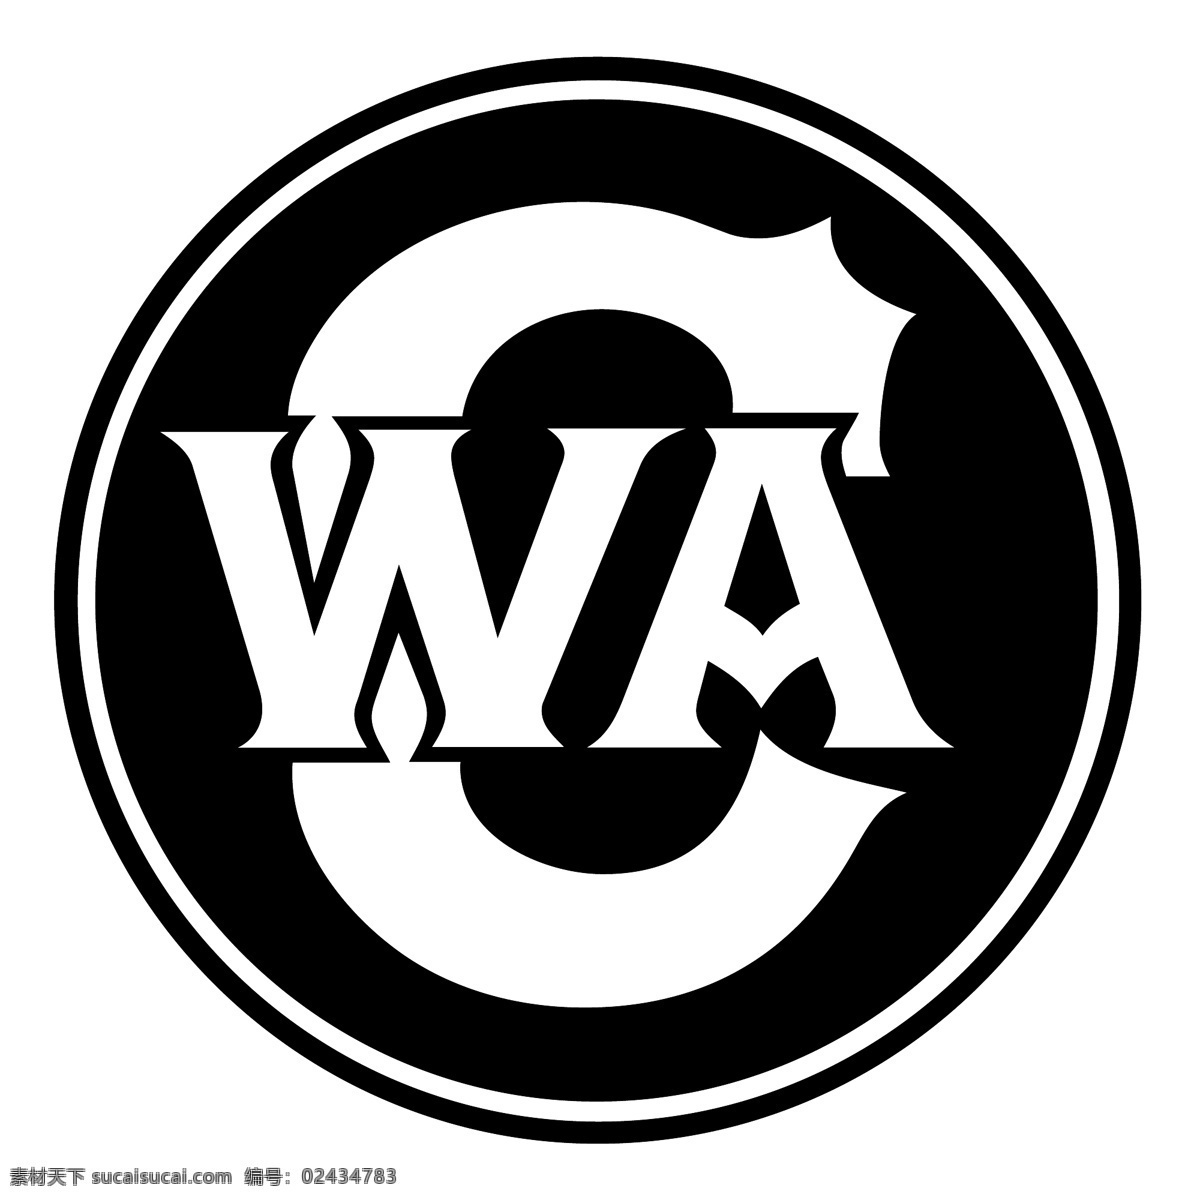 cwa cwa的标志 矢量 eps标志 向量 向量是cwa 矢量标志 标志 内贝特cwa 载体内贝特 cwa的载体 是标志 蓝色